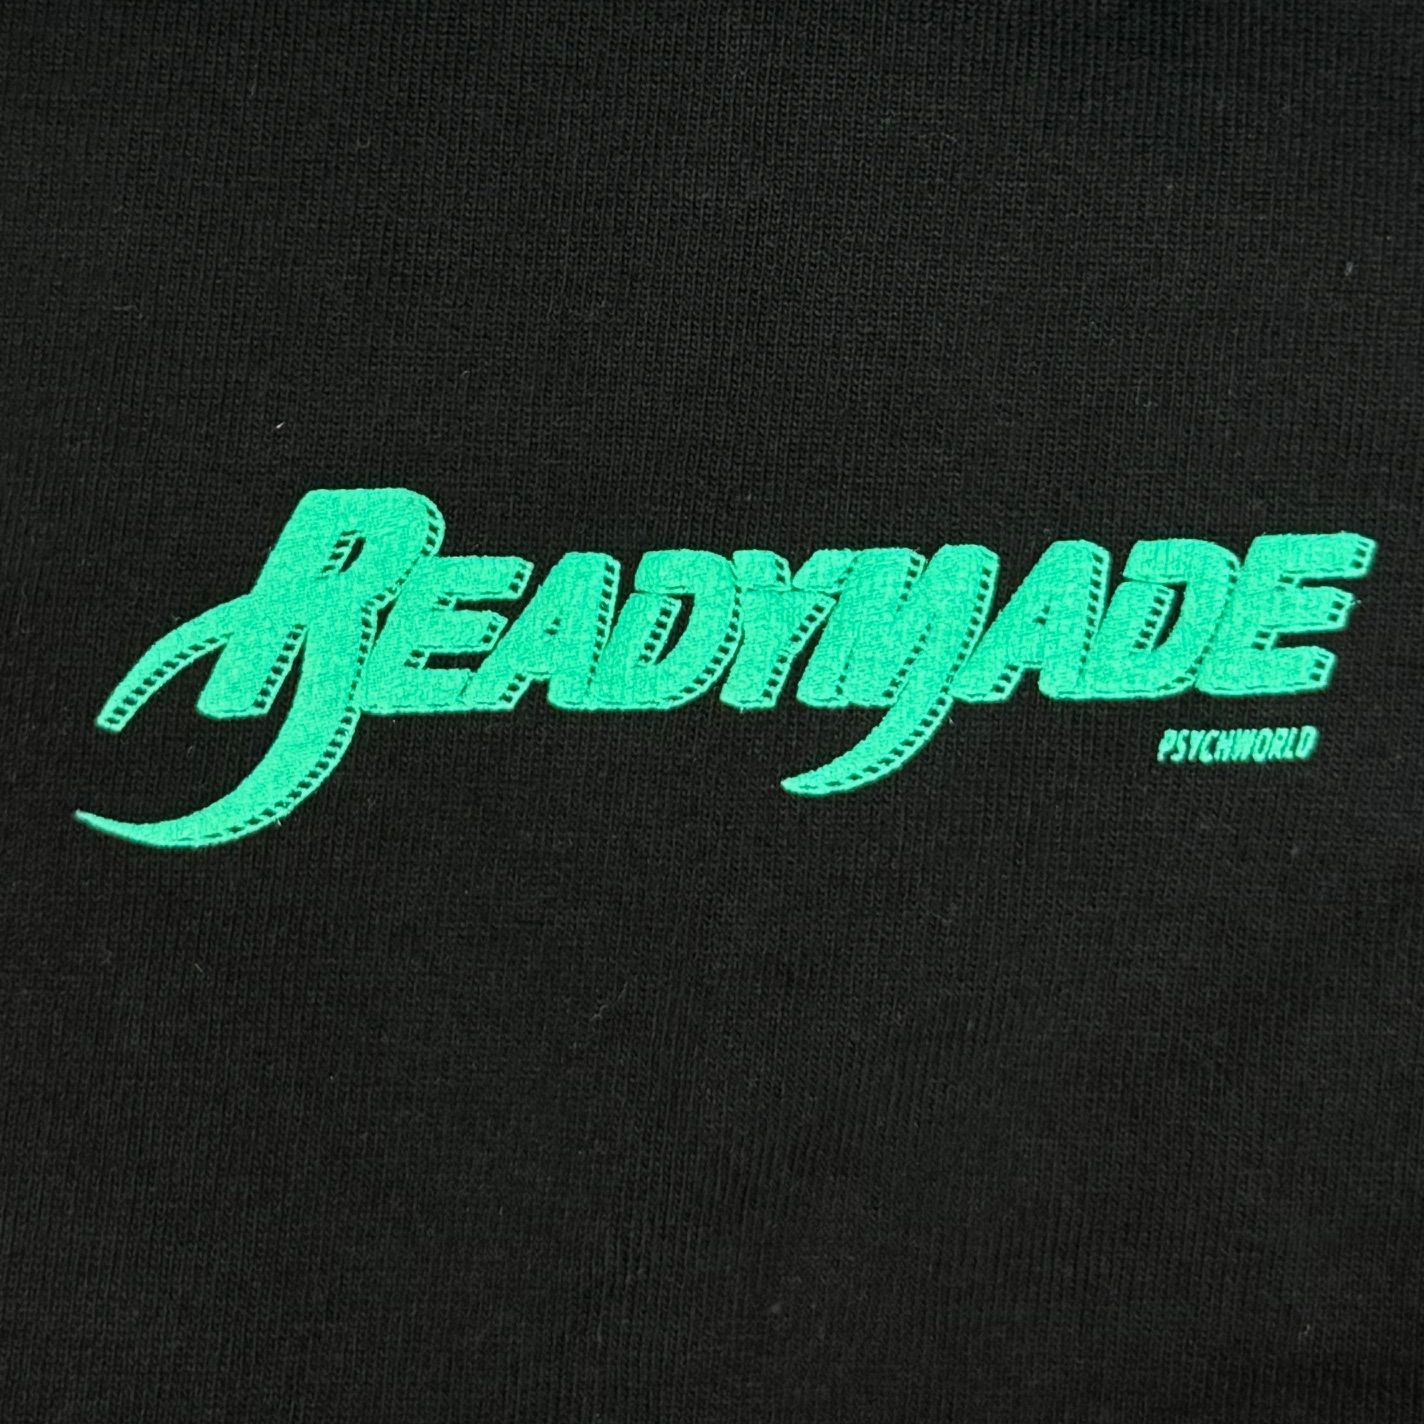 READYMADE × Psychworld コラボ ロゴプリント Tシャツ レディメイド サイコワールド  ブラック XL  62321A3